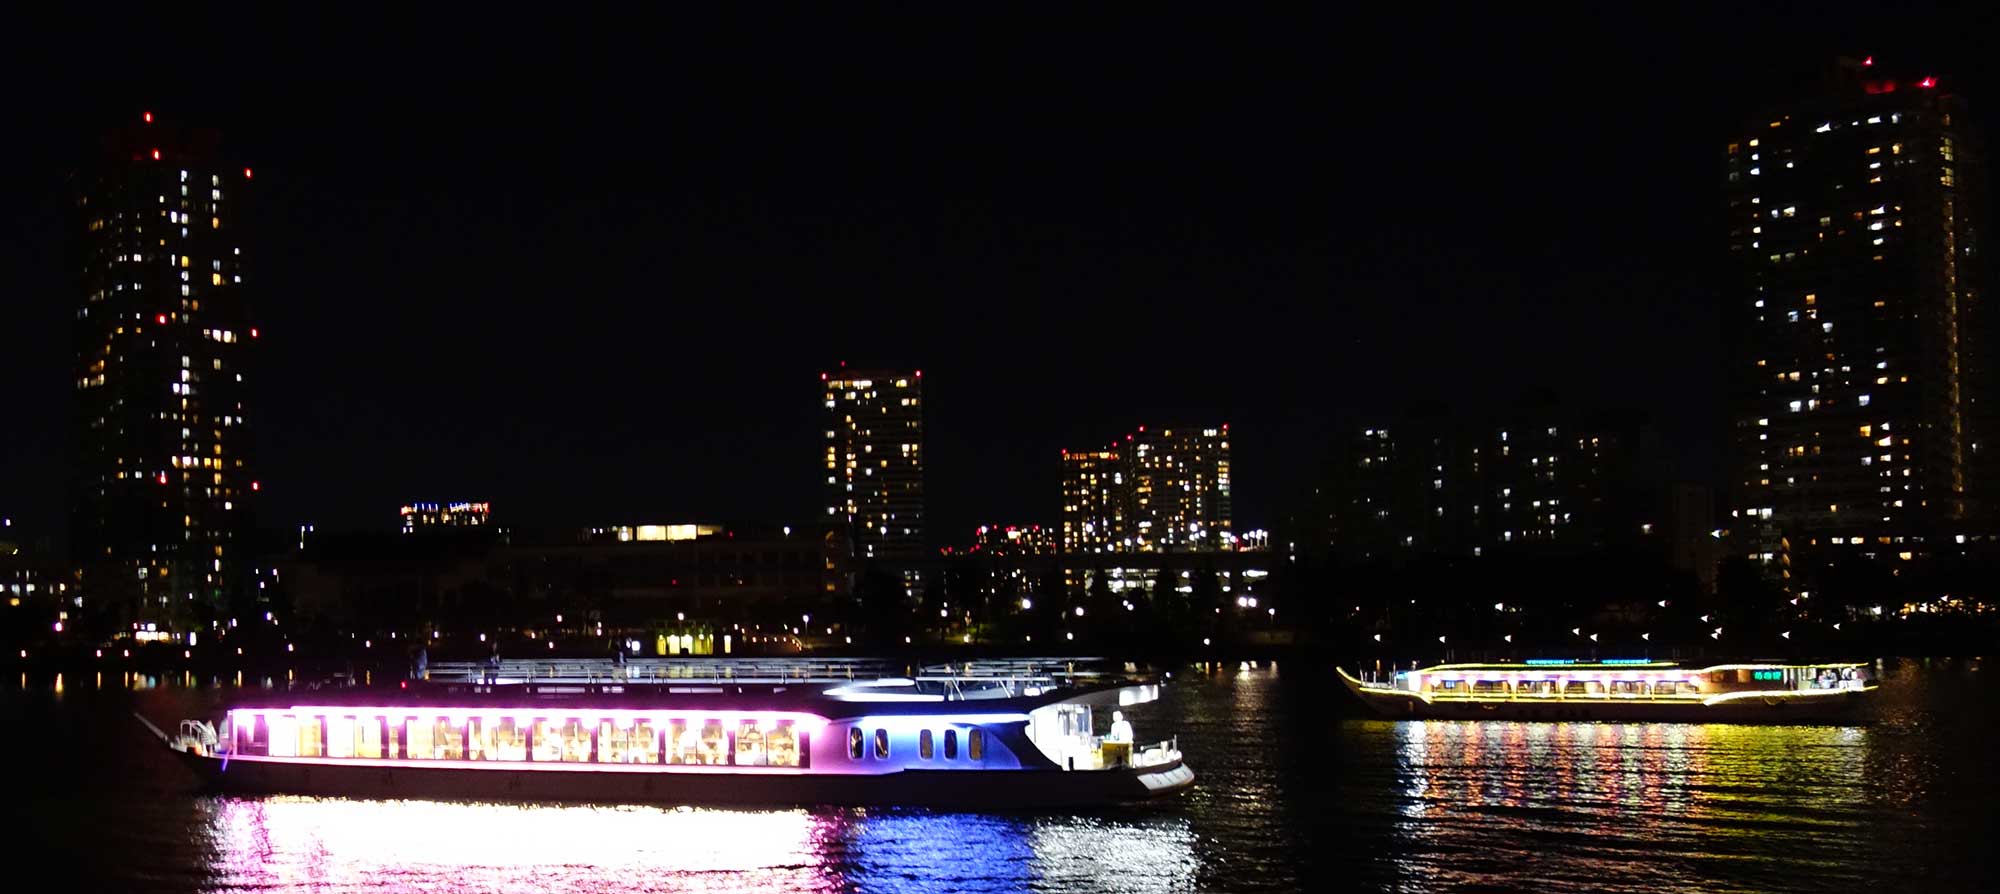 Традиционное судно-ресторанчик яката-бунэ в Токийском заливе на фоне ночного города